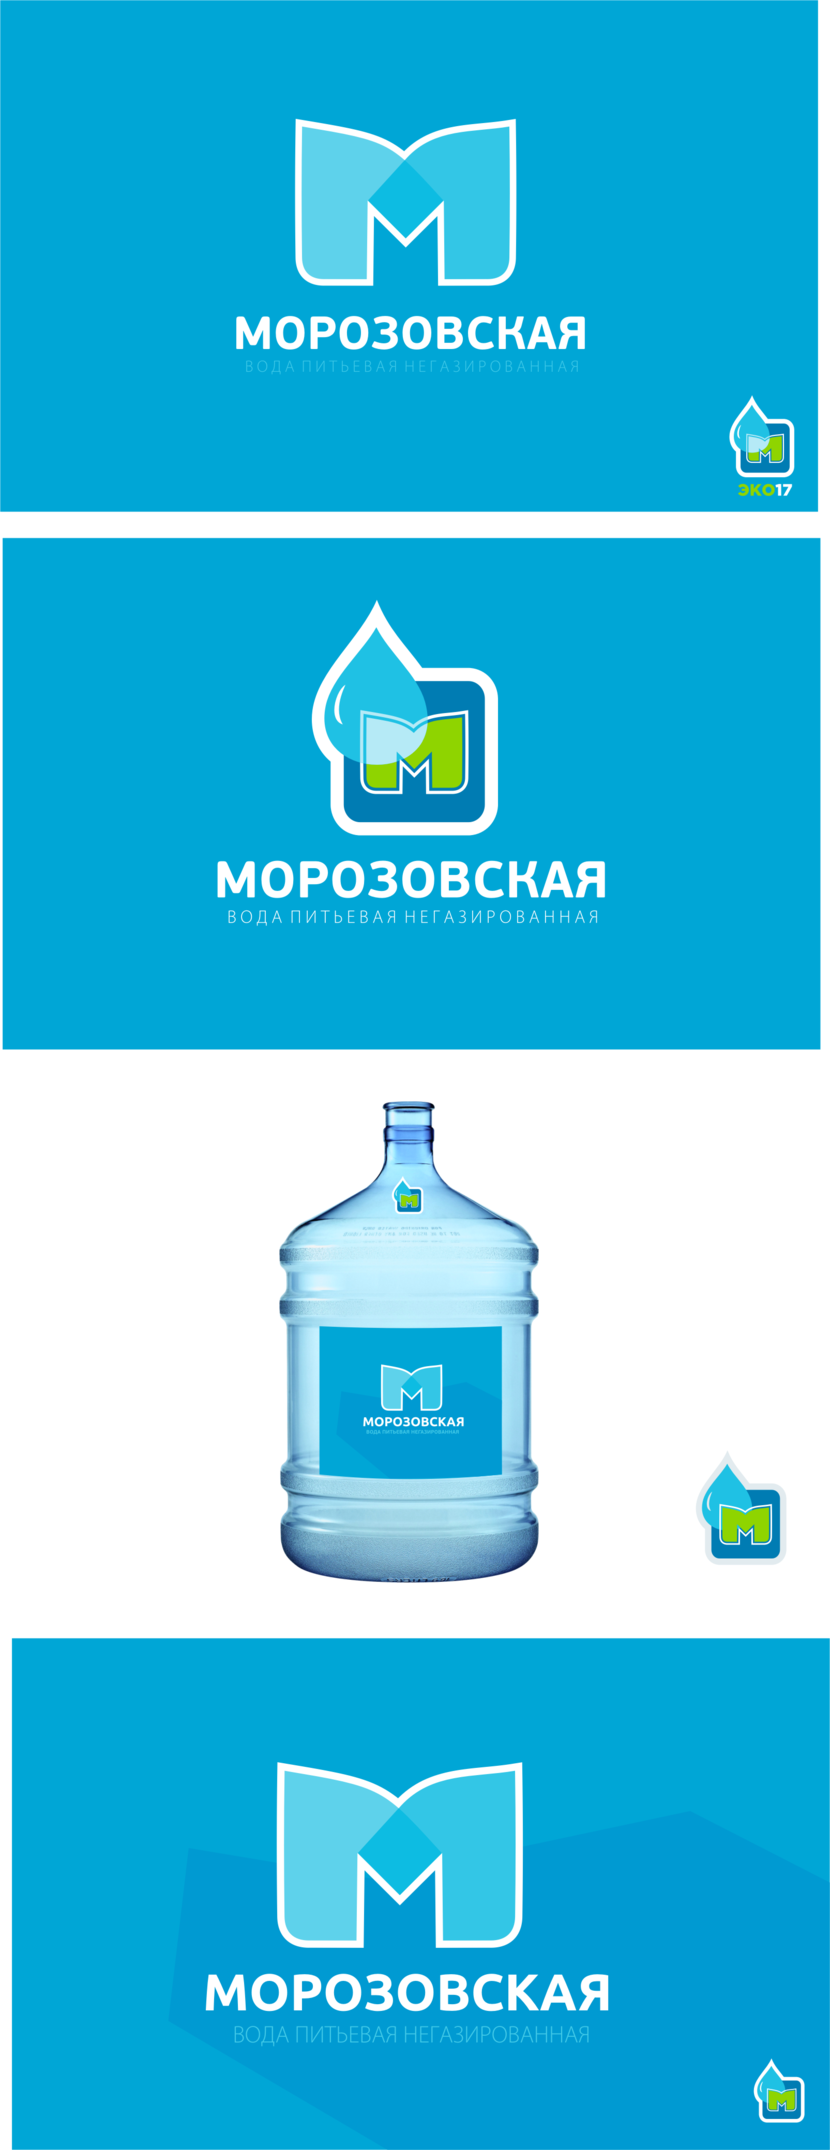 первый вариант - Разработка логотипа и ЭТИКЕТКИ для питьевой воды